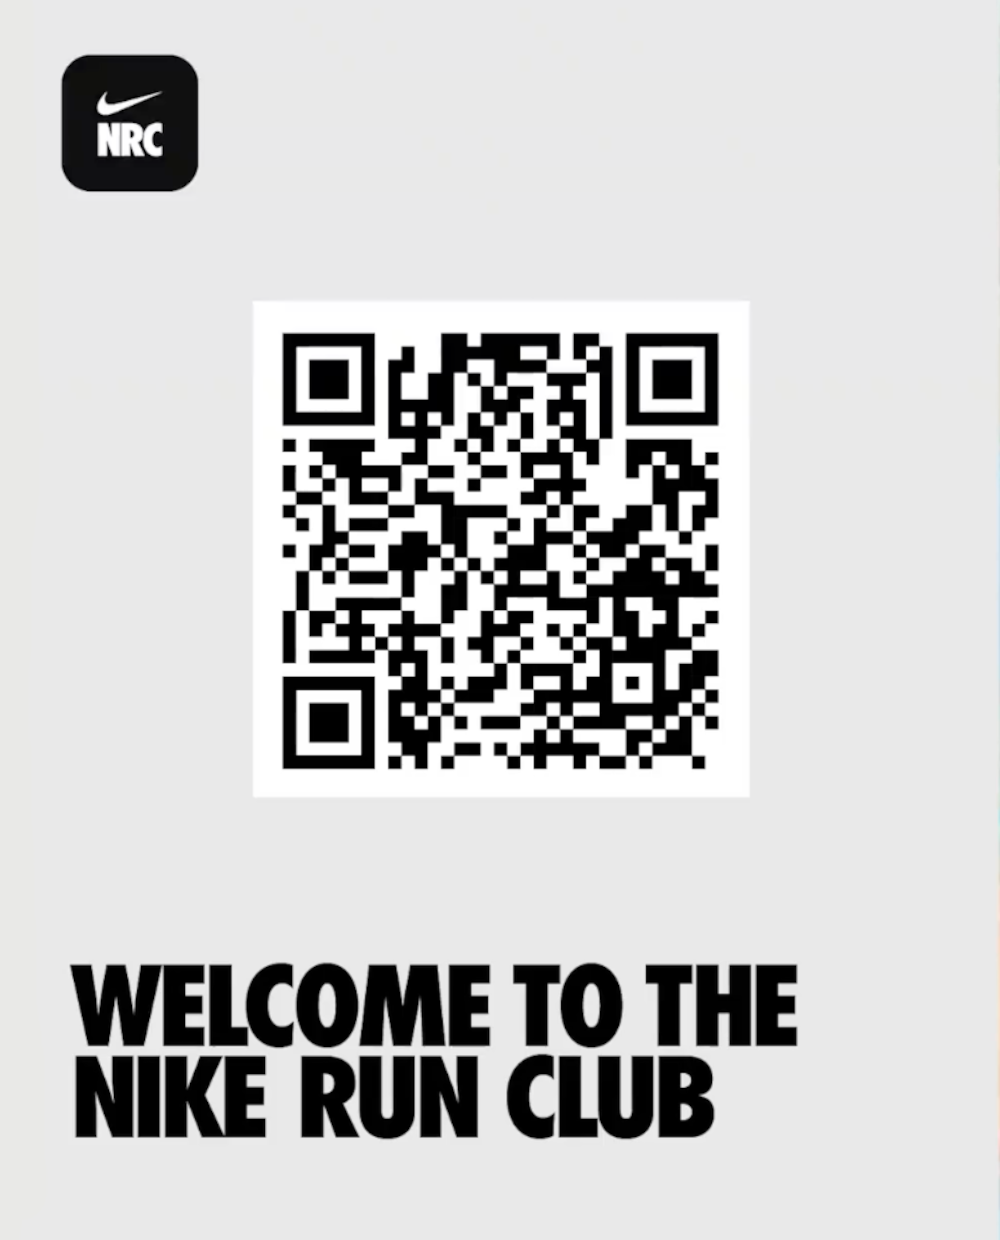 Camp dress Nike Nrc App